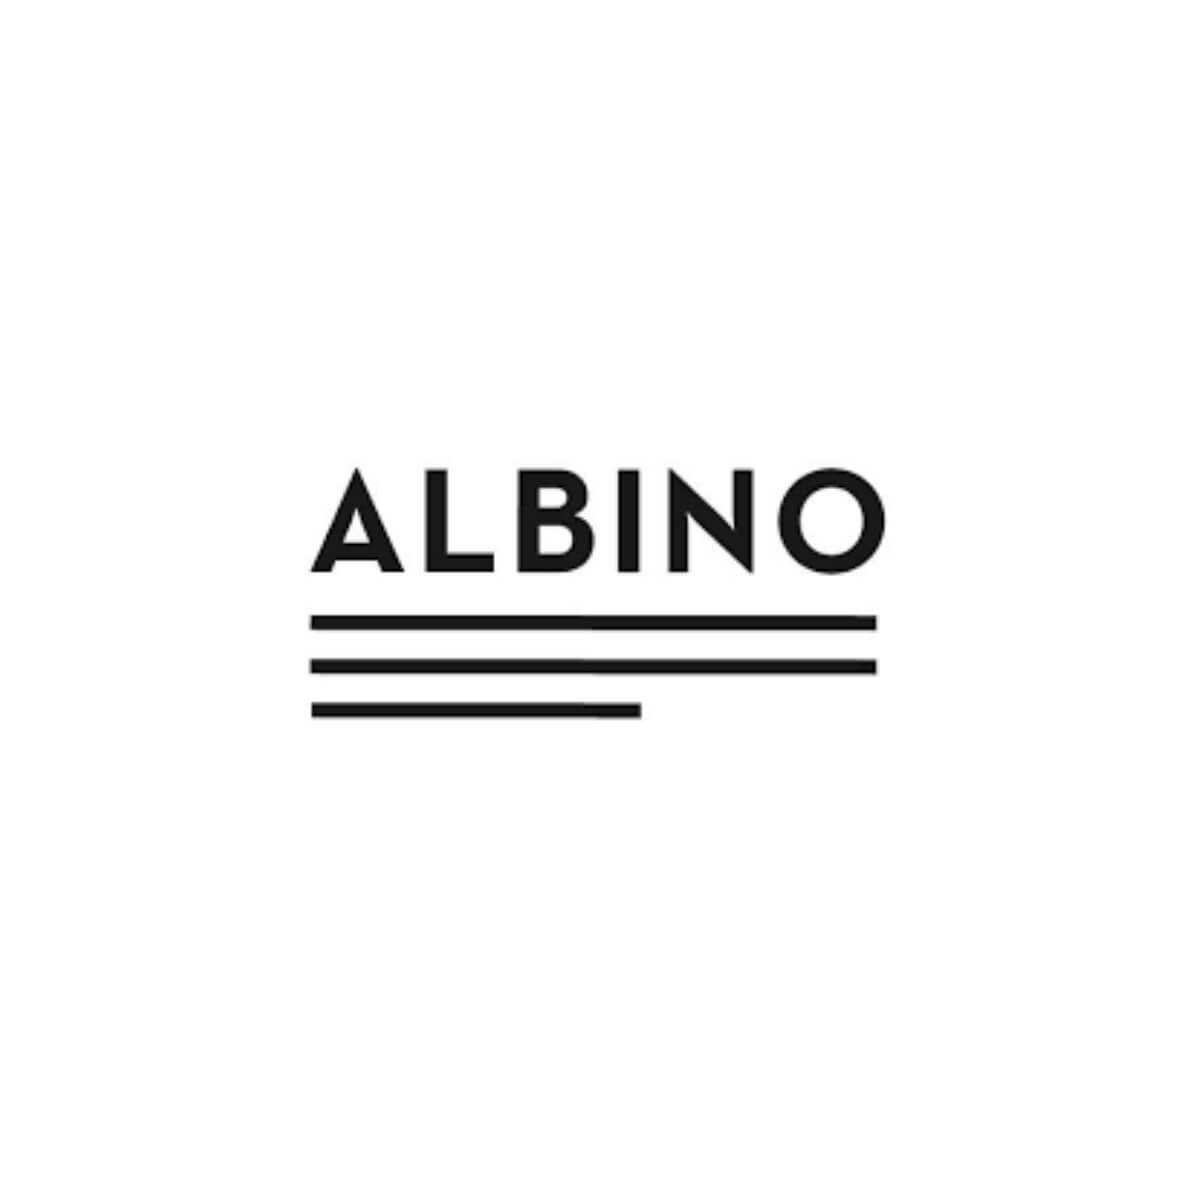 Albino Verlag | Bookspread